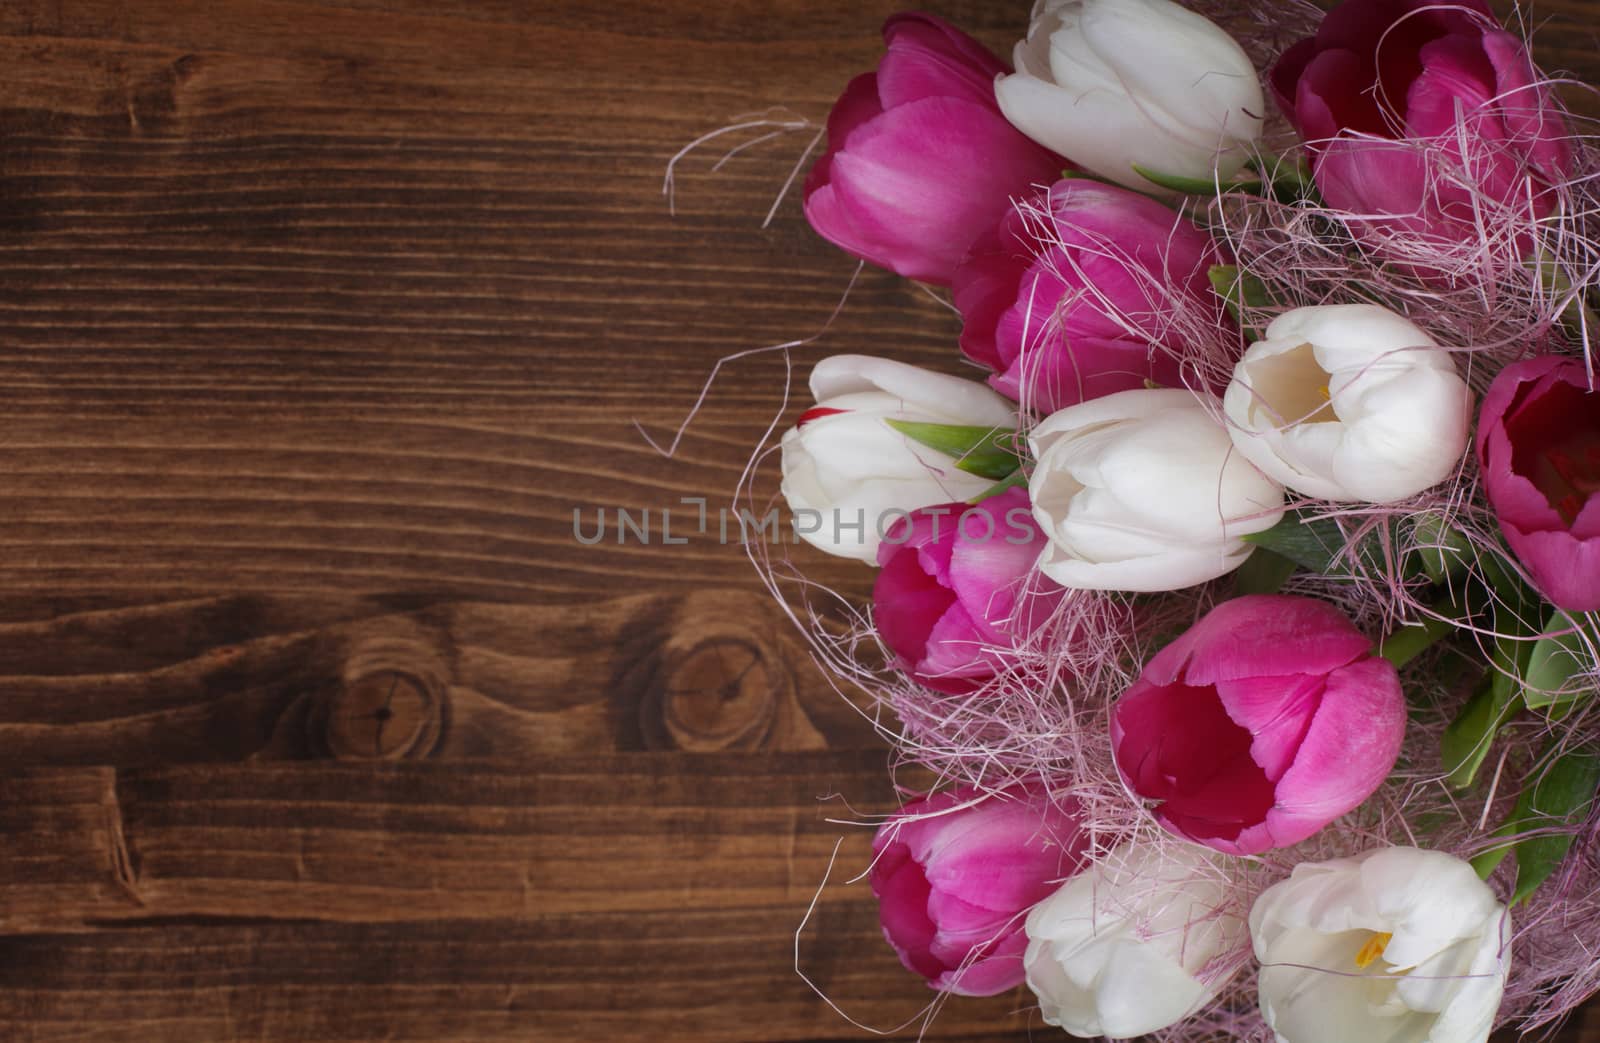 tulip bouquet on wood background by rudchenko